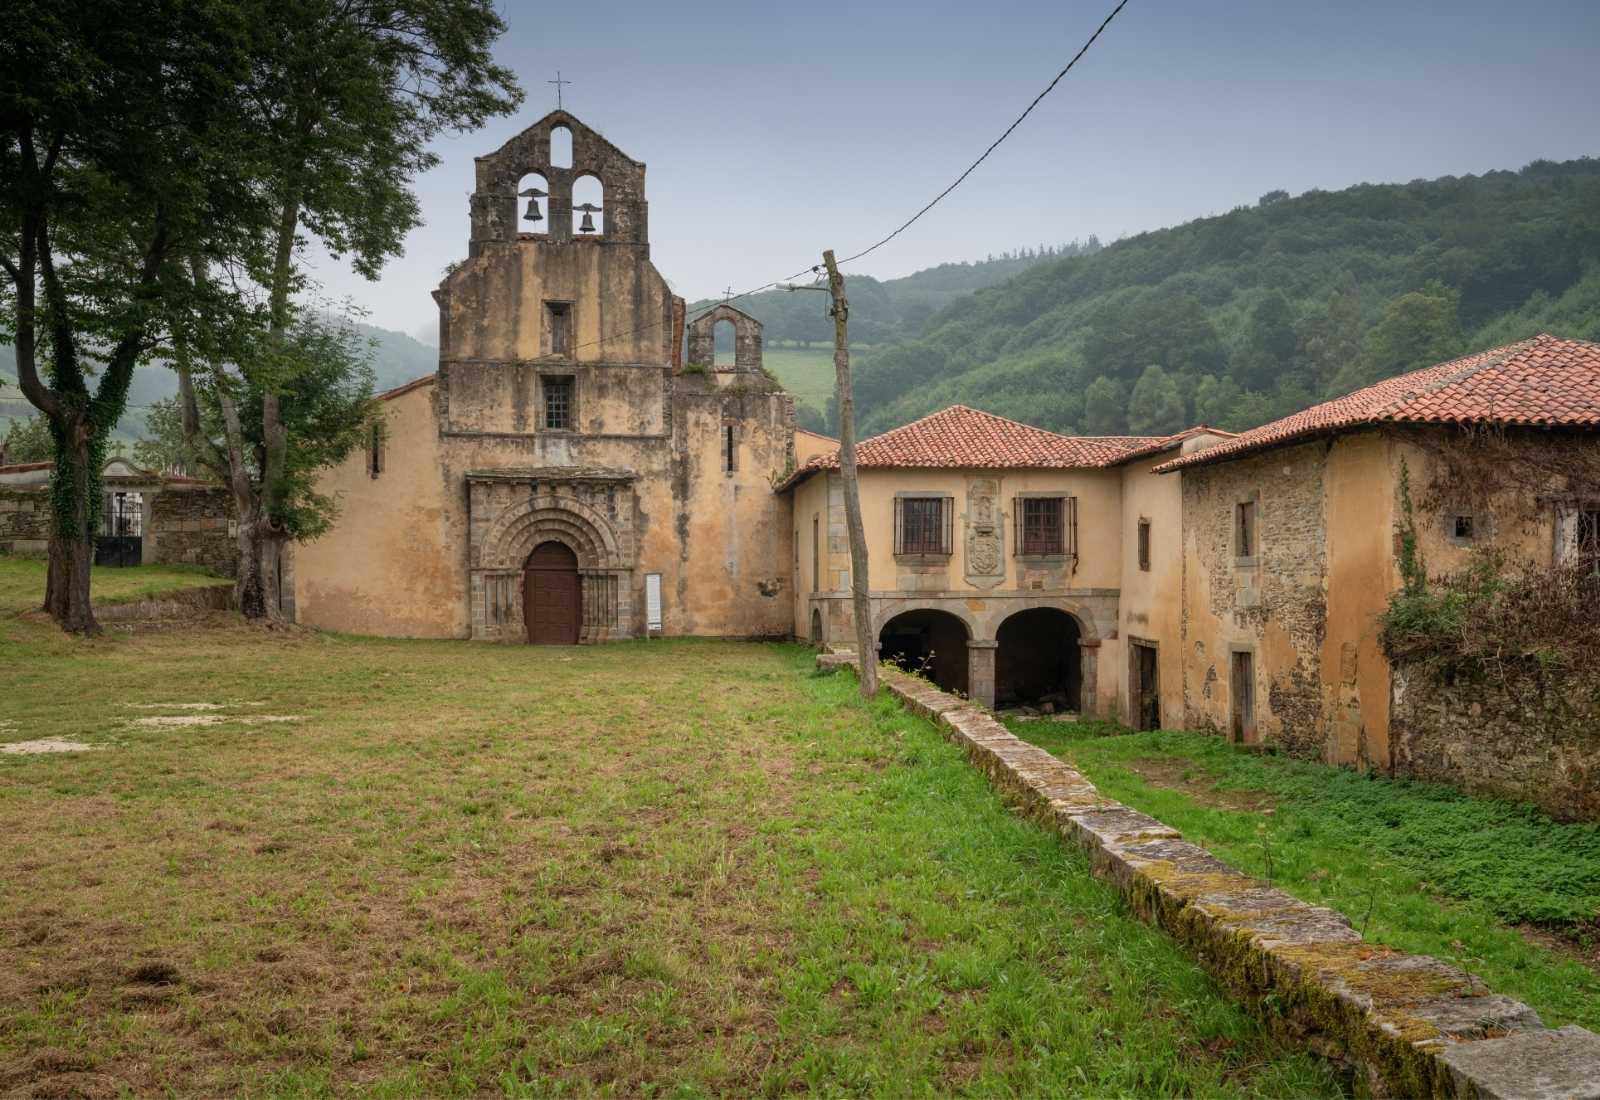 Monasterio de Santa María la Real de Obona